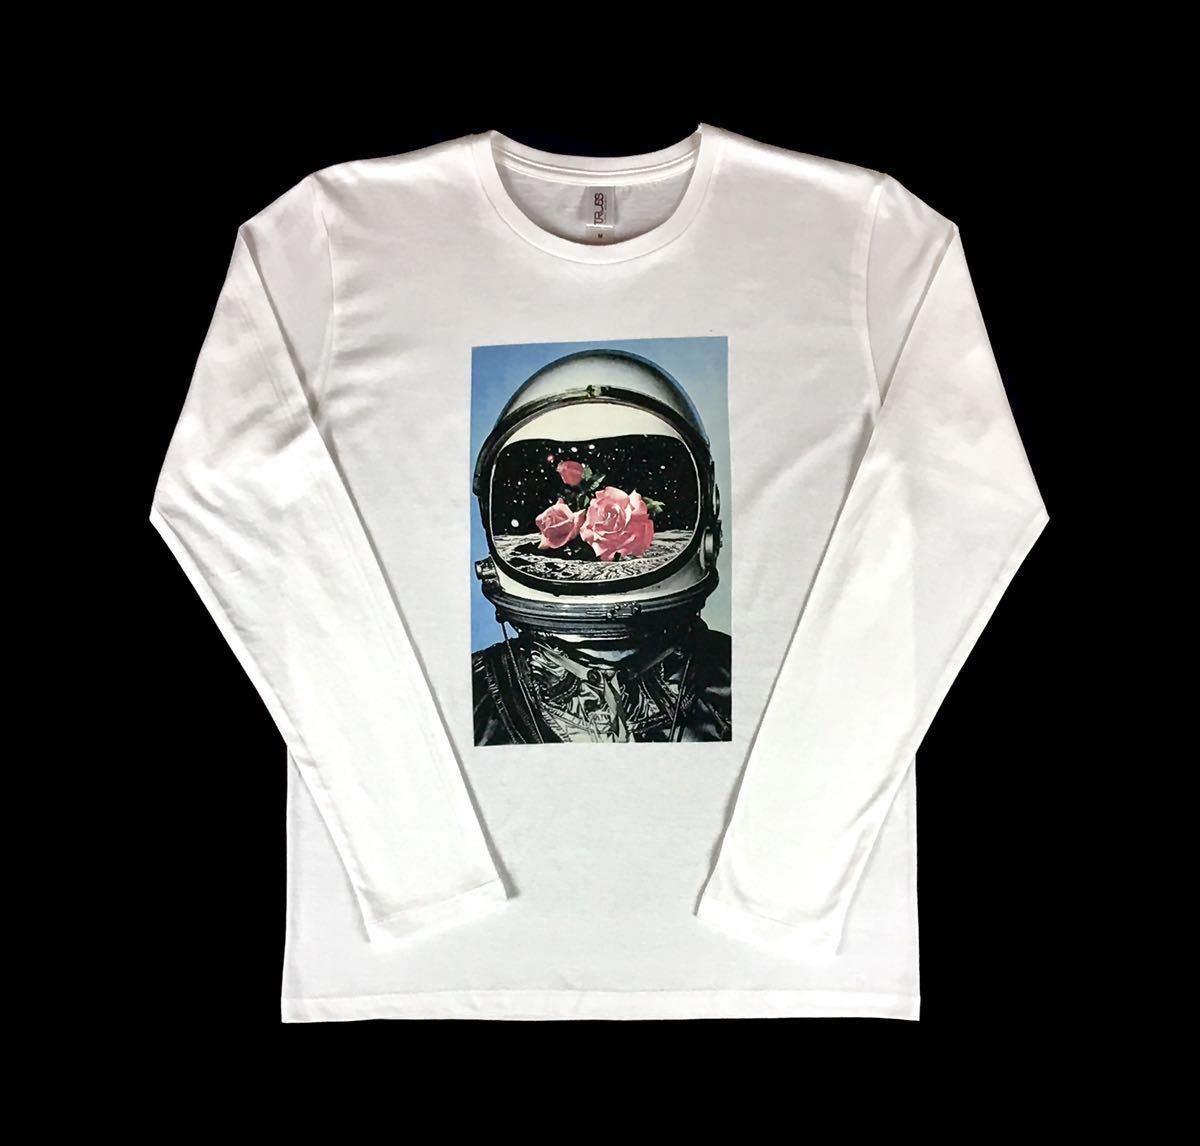 新品 宇宙飛行士 アストロノーツ 薔薇 バラ NASAアポロ計画 月面着陸 レトロ コズミック ロンT 長袖 Tシャツ Mサイズ タイト スリム ビッグ_画像6